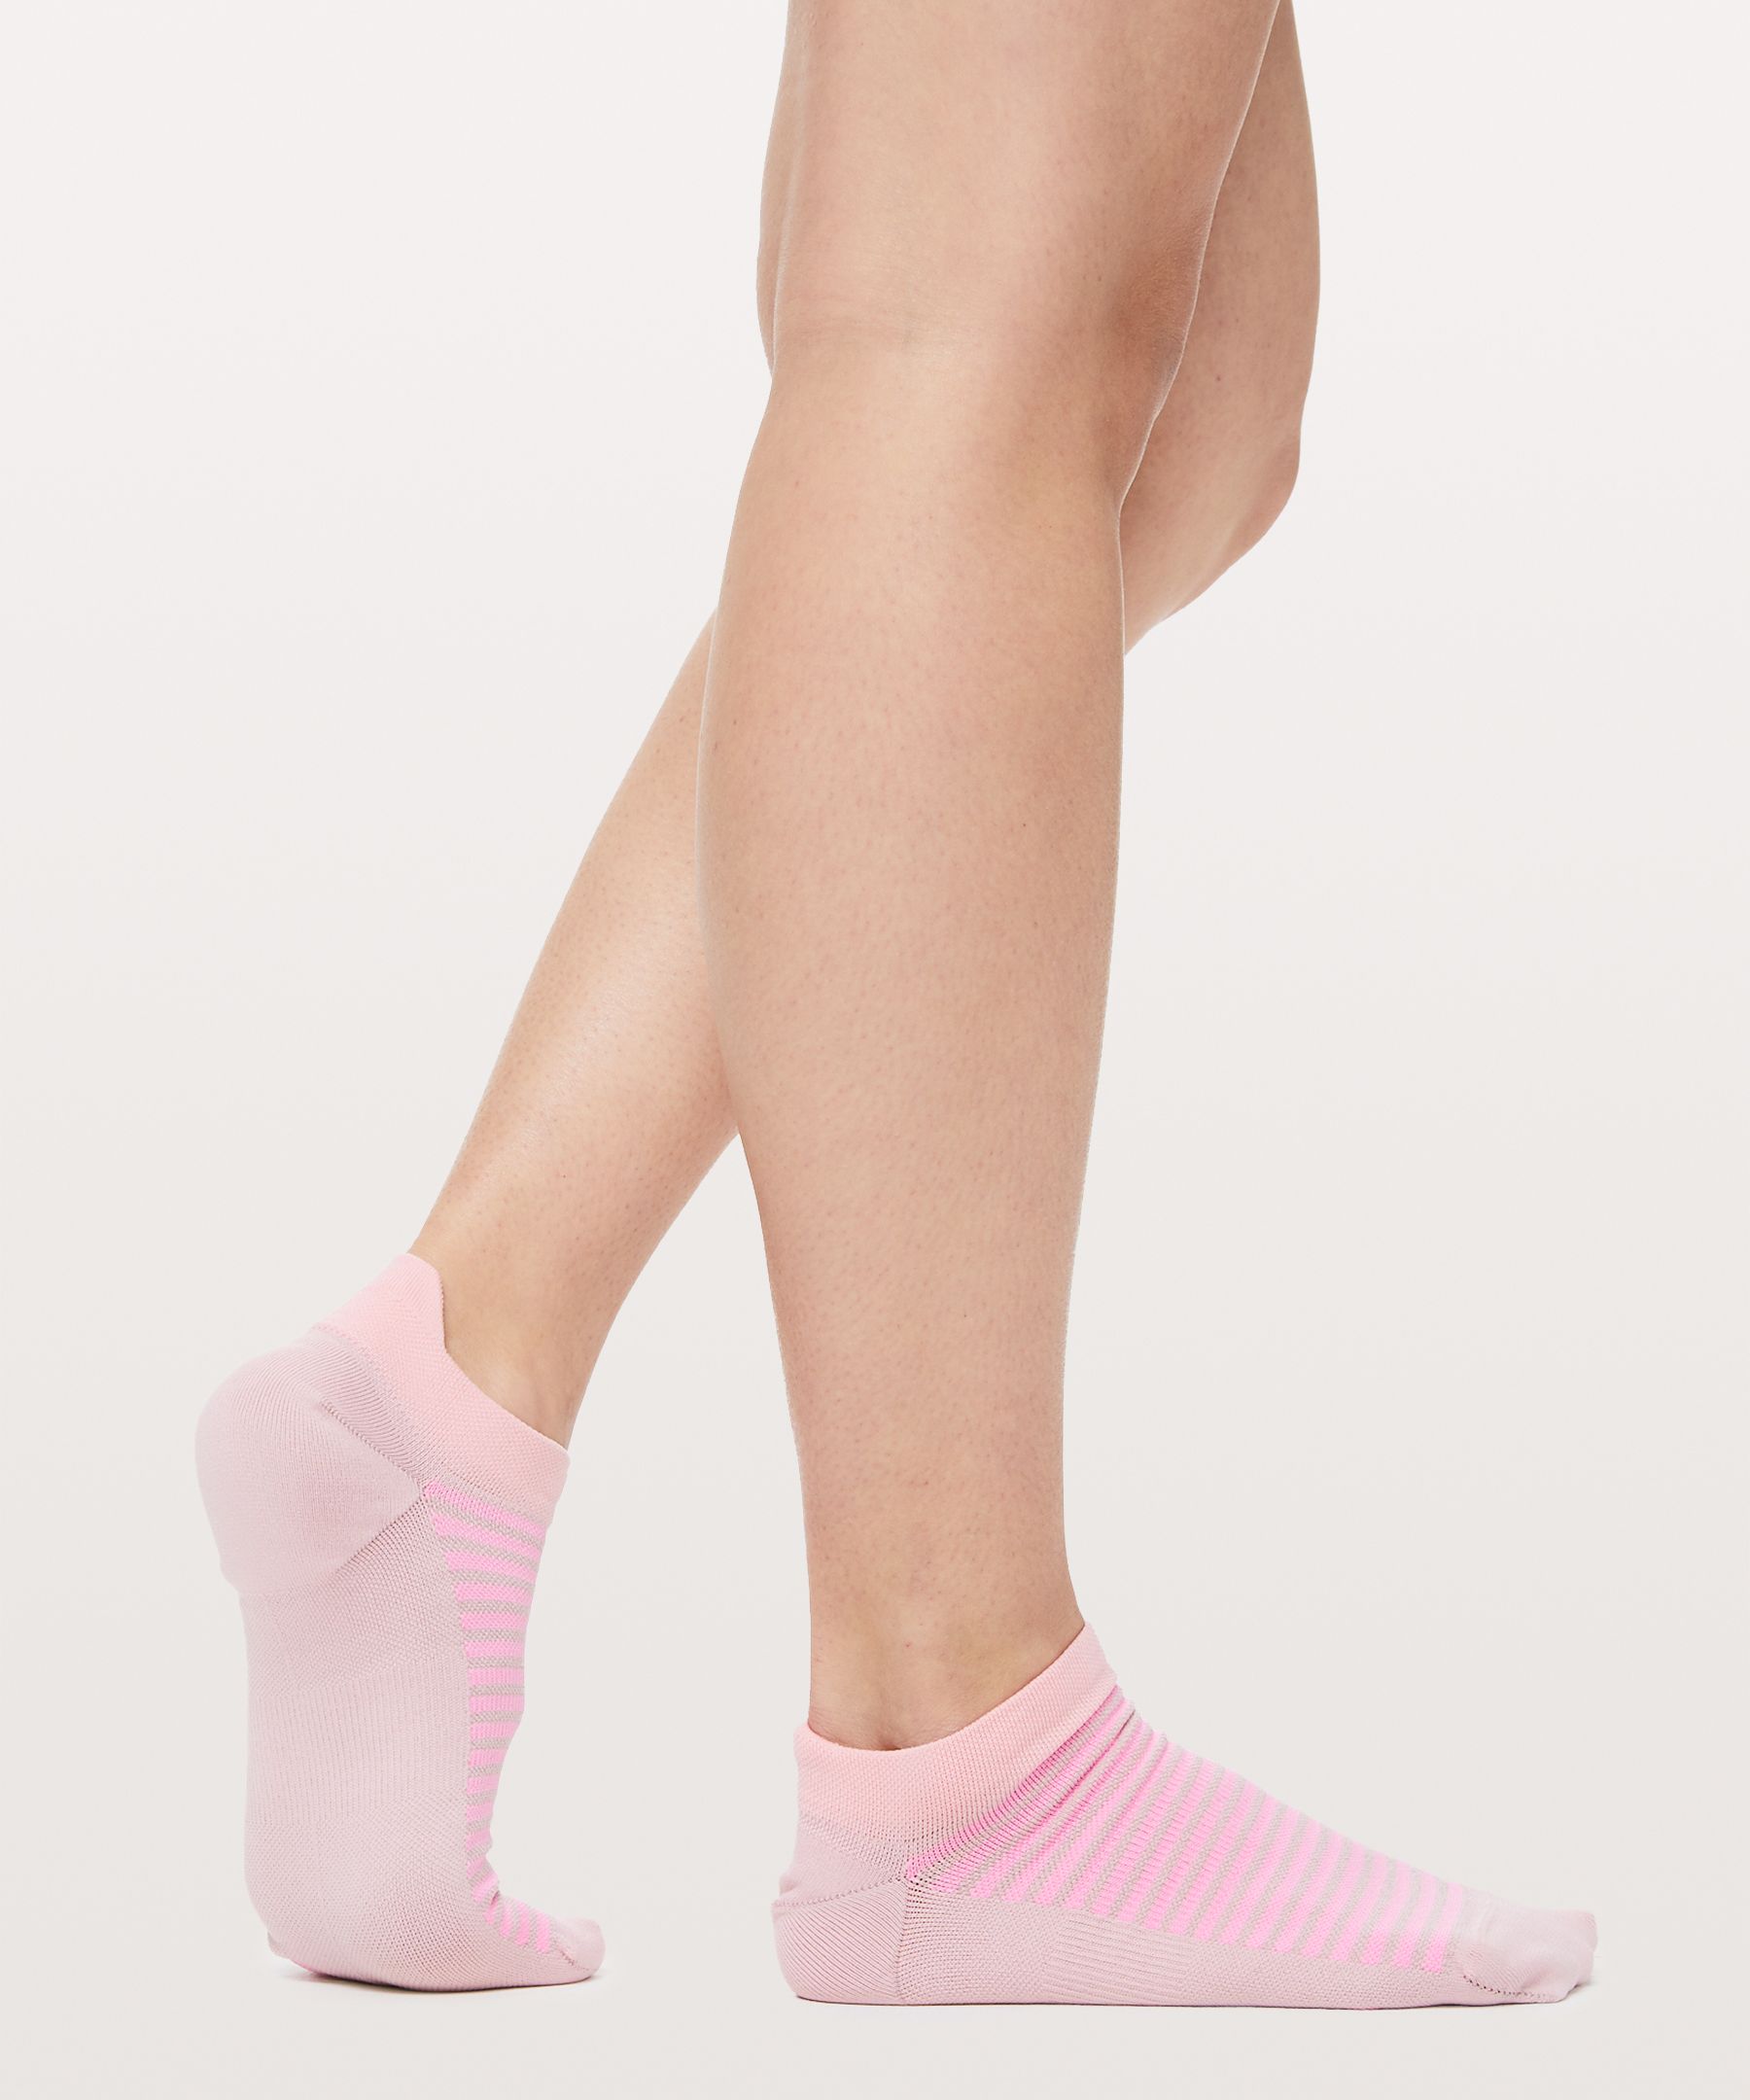 lululemon socks womens